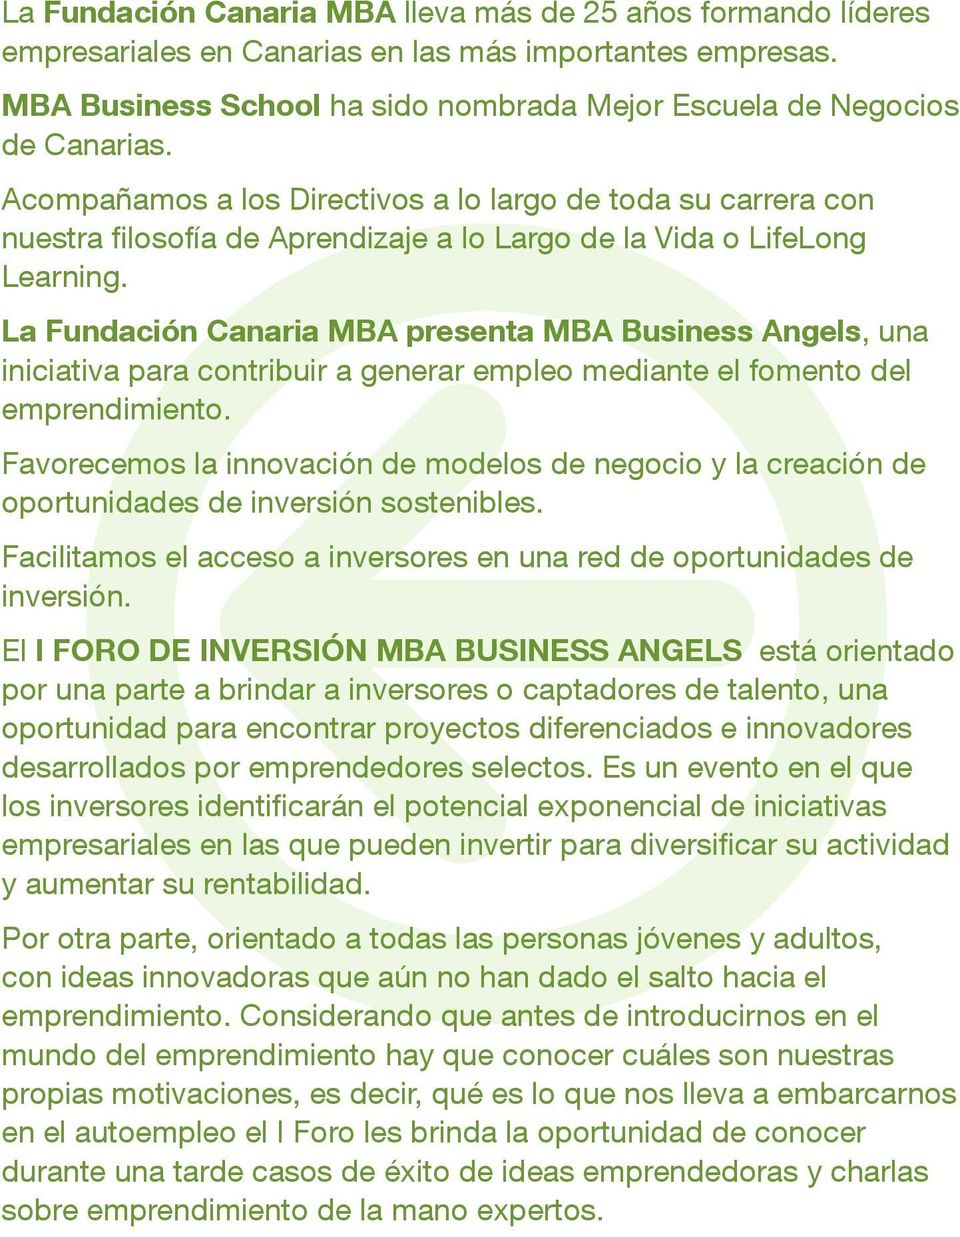 La Fundación Canaria MBA presenta MBA Business Angels, una iniciativa para contribuir a generar empleo mediante el fomento del emprendimiento.